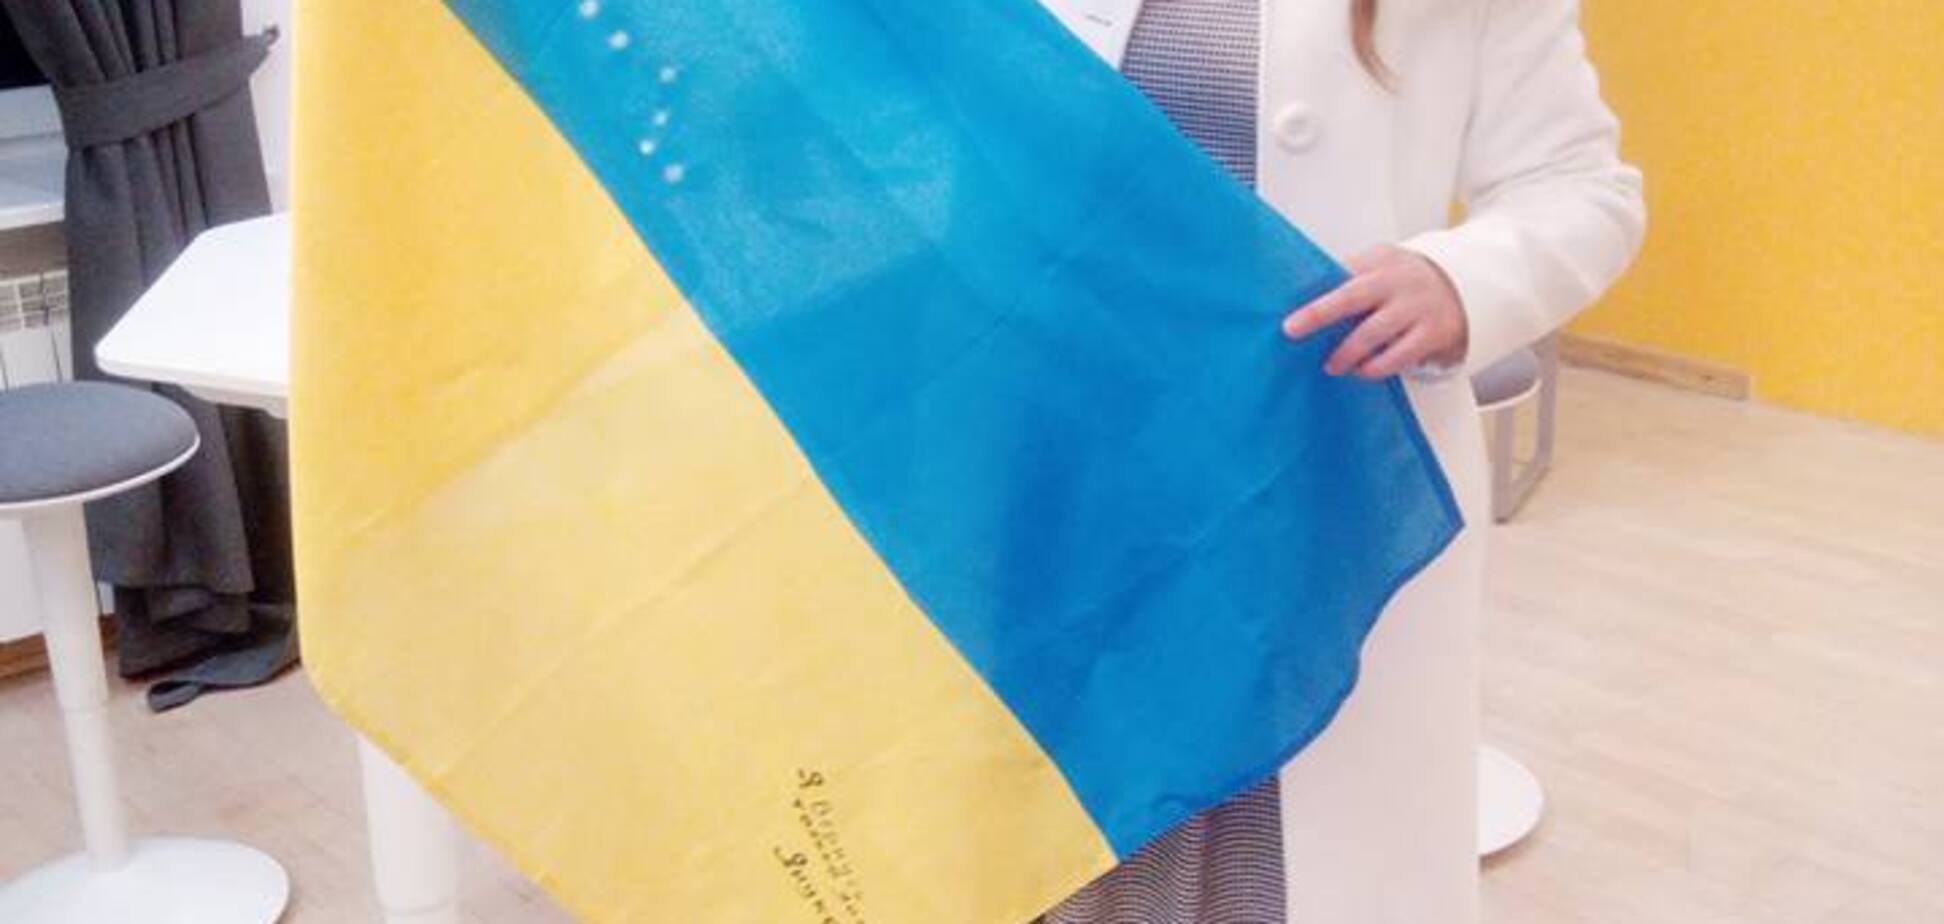 Прапор від Януковича врятував: скандальнп українська журналістка повеселила мережу спецоперацією щодо її вбивства в Києві